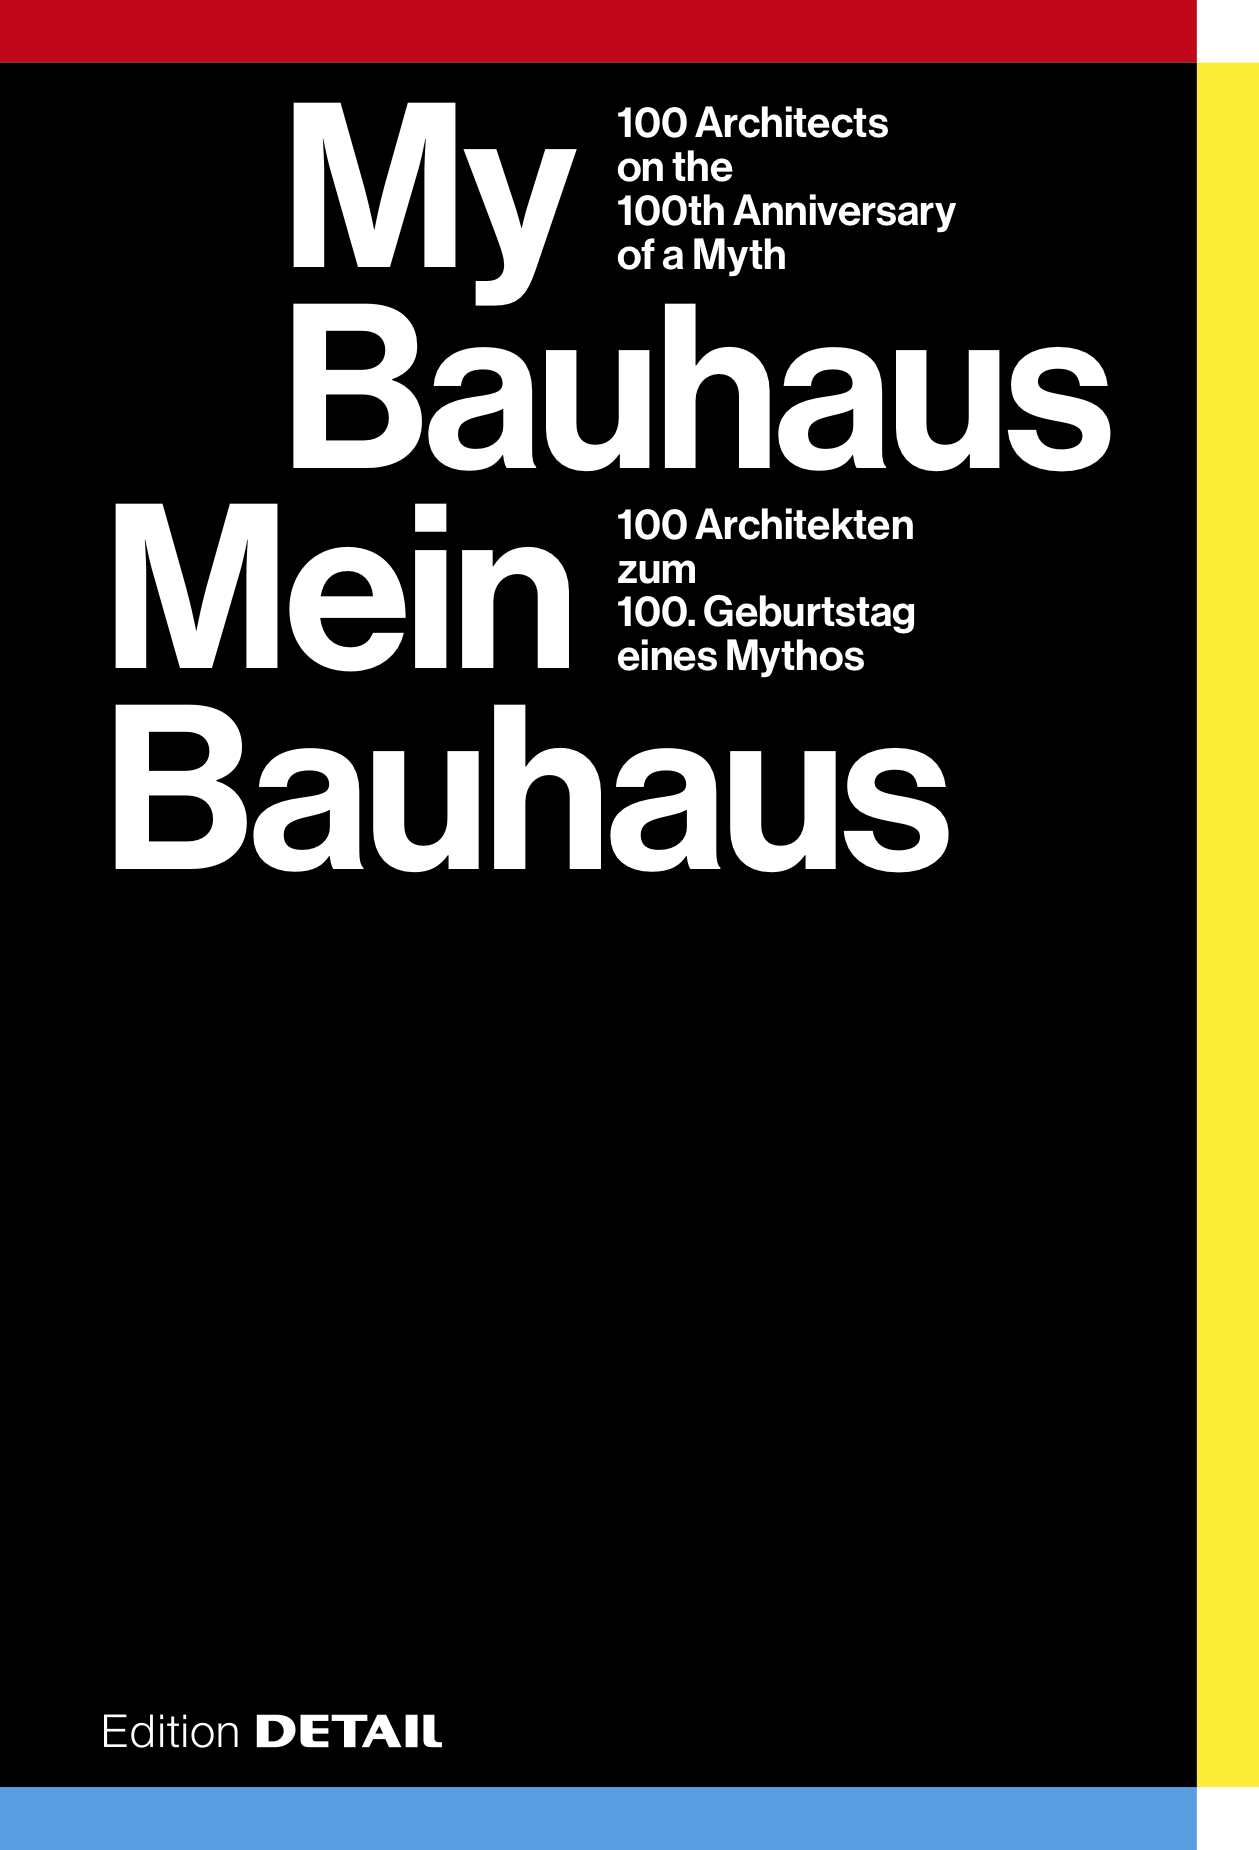 My Bauhaus | Mein Bauhaus